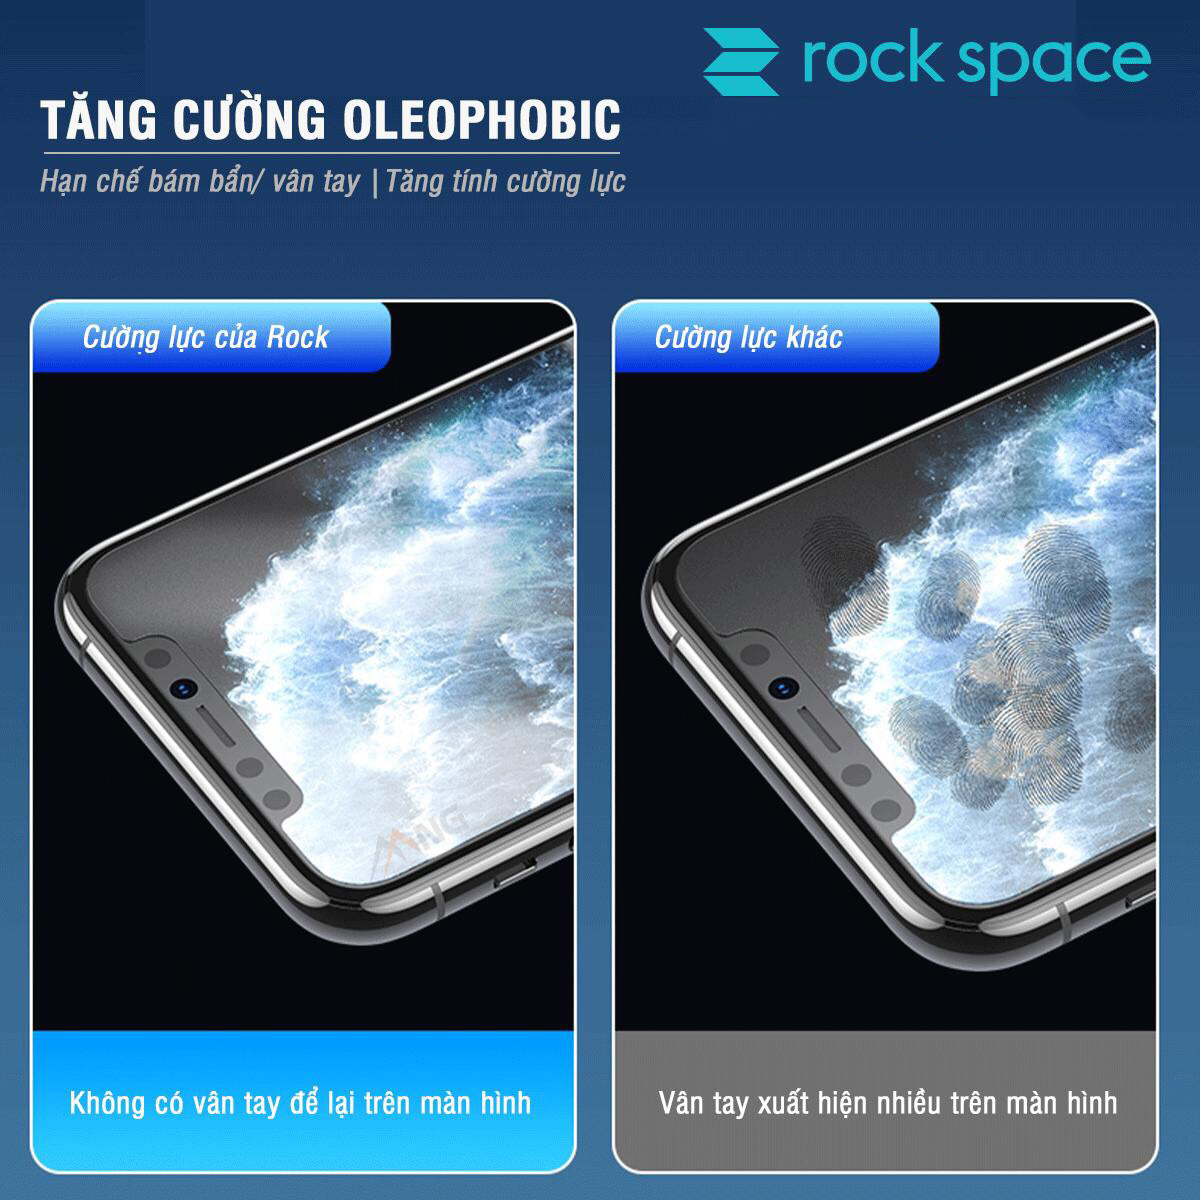 Miếng dán rock space cho Bphone B86/ B86s PPF Hydrogel dán màn hình/ mặt sau lưng điện thoại tự phục hồi vết xước nhỏ chống ánh sáng xanh cao cấp - Hàng chính hãng